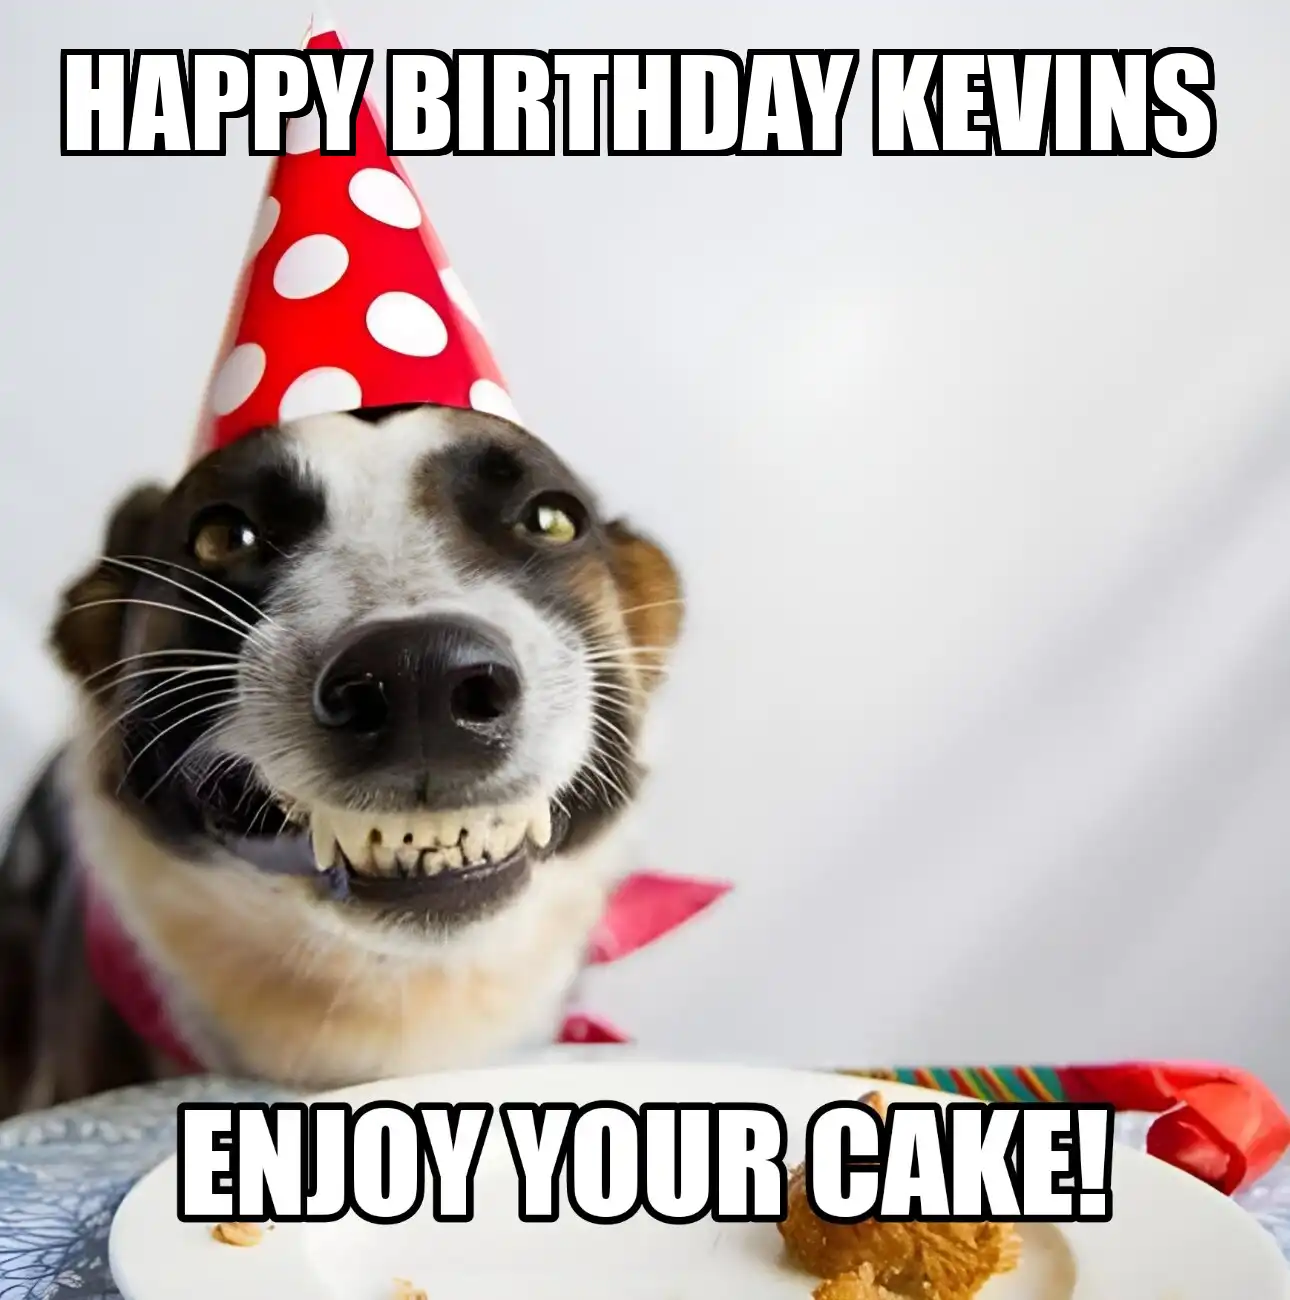 Happy Birthday Kevins Enjoy Your Cake Dog Meme